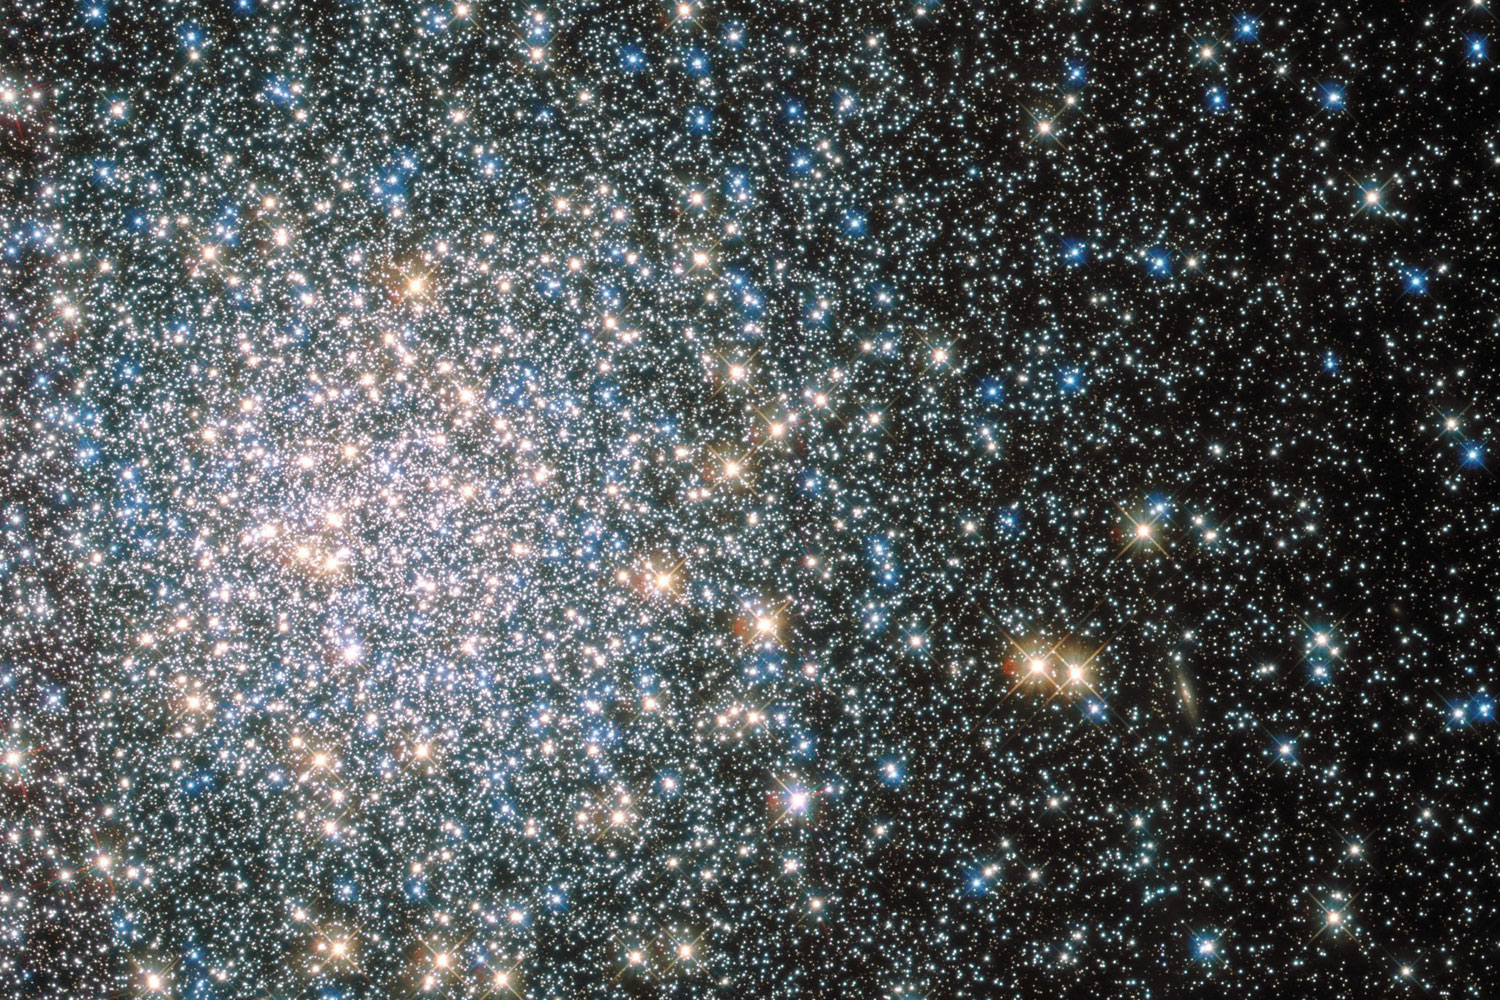 Globular star cluster Messier 5